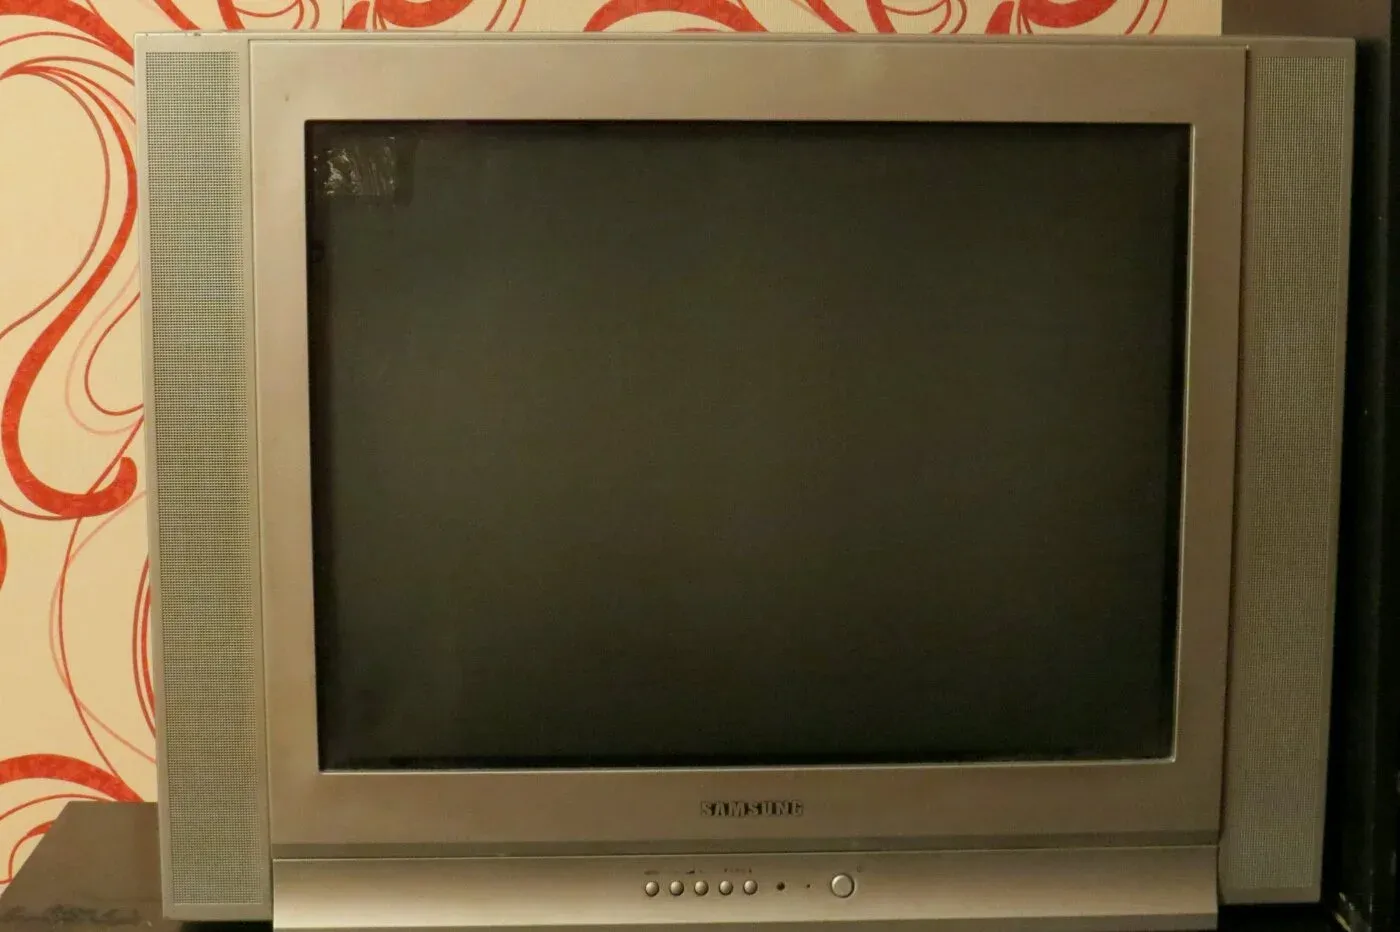 Телевизоры 2004 года. Телевизор Samsung 1998 года. Телевизор Samsung 1992. Телевизор самсунг кинескопный 2006. Телевизор кинескопный самсунг 72 см серебристый.